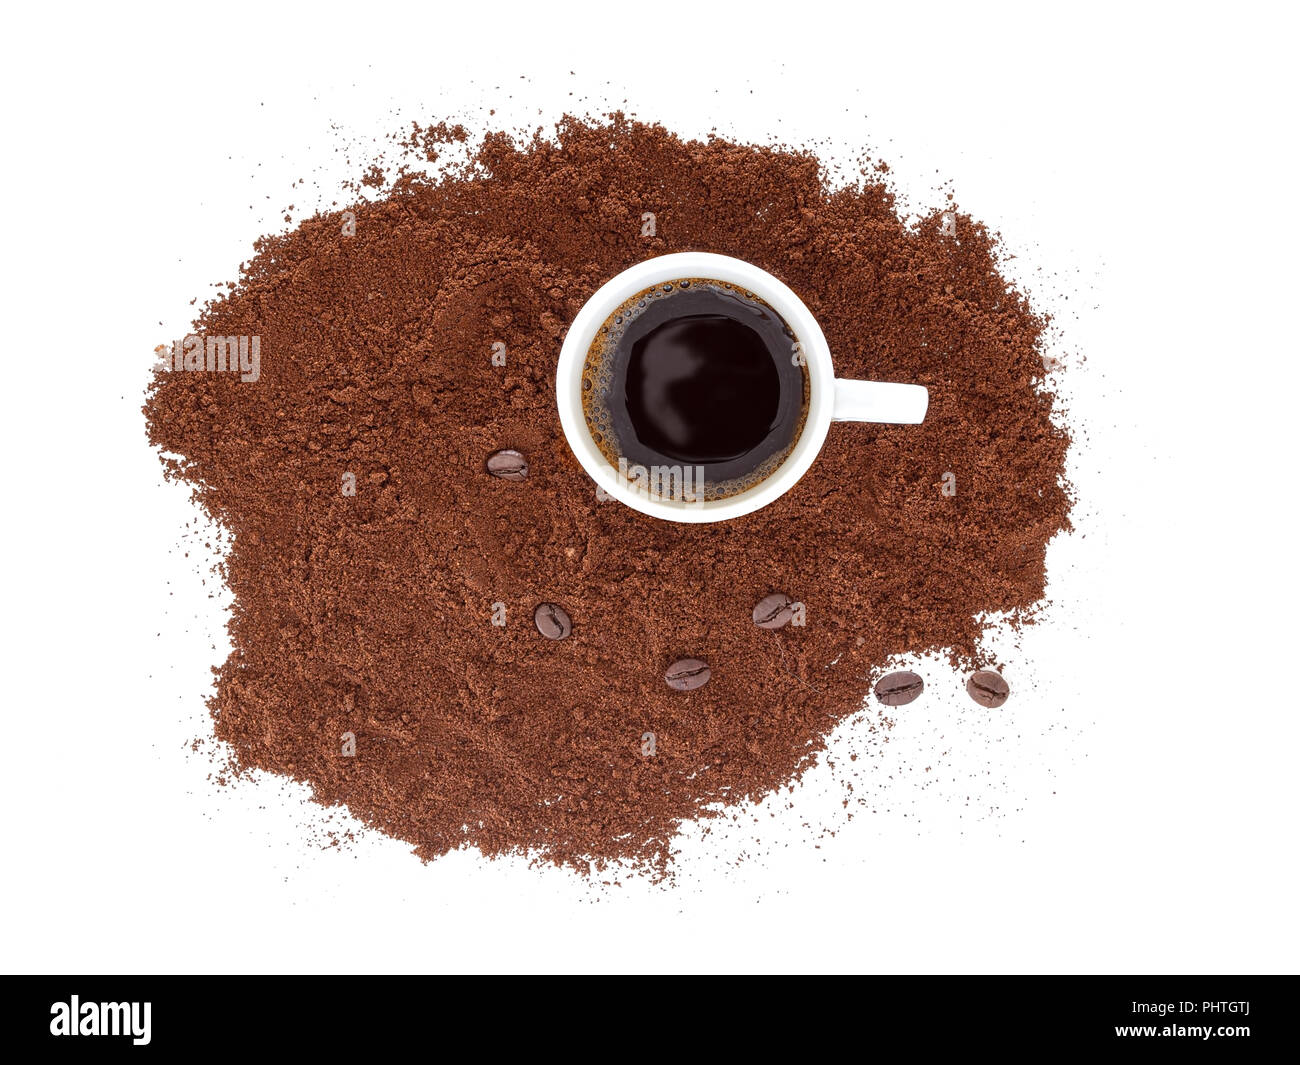 Forte, nero espresso in una tazza di bianco, con caffè appena macinato e fagioli. Isolato su sfondo bianco. Foto Stock